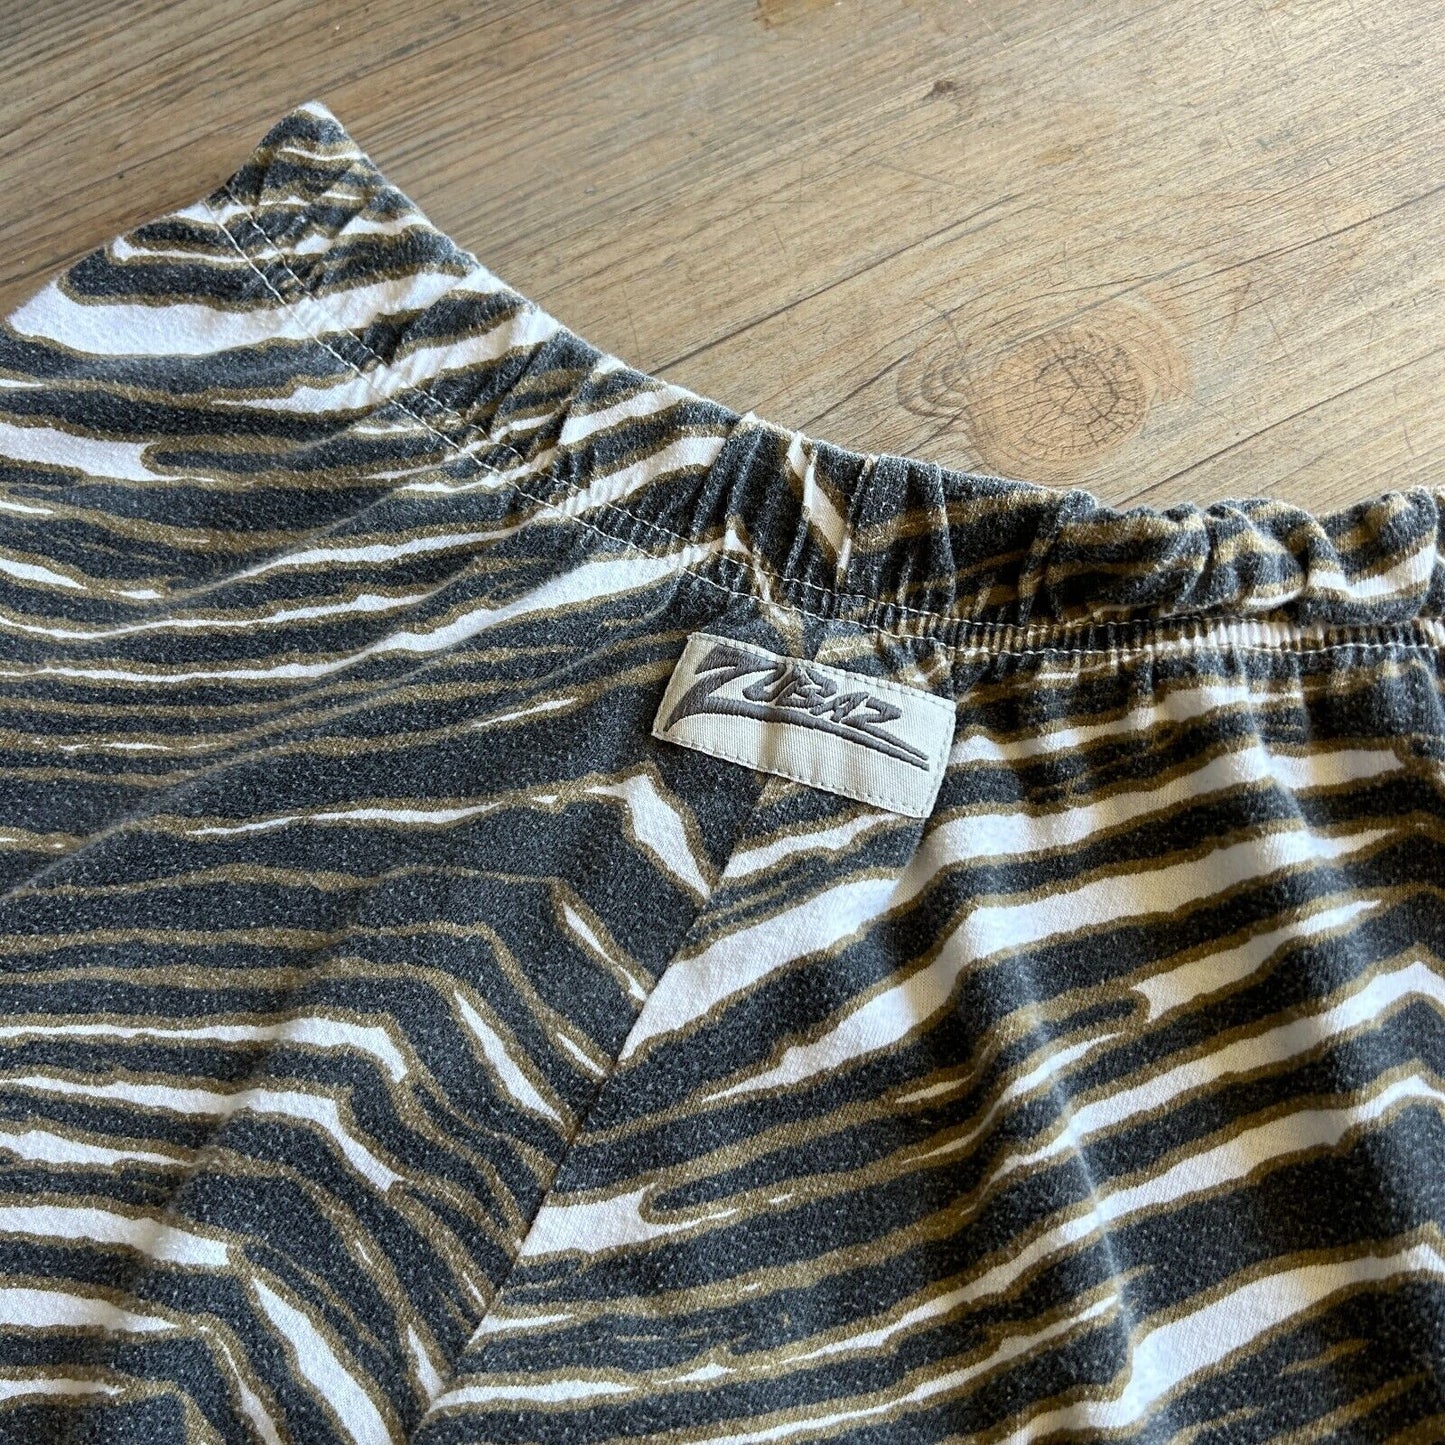 VINTAGE 90s | Zubaz Green Bay Tiger Stripe Sweat Pants sz L